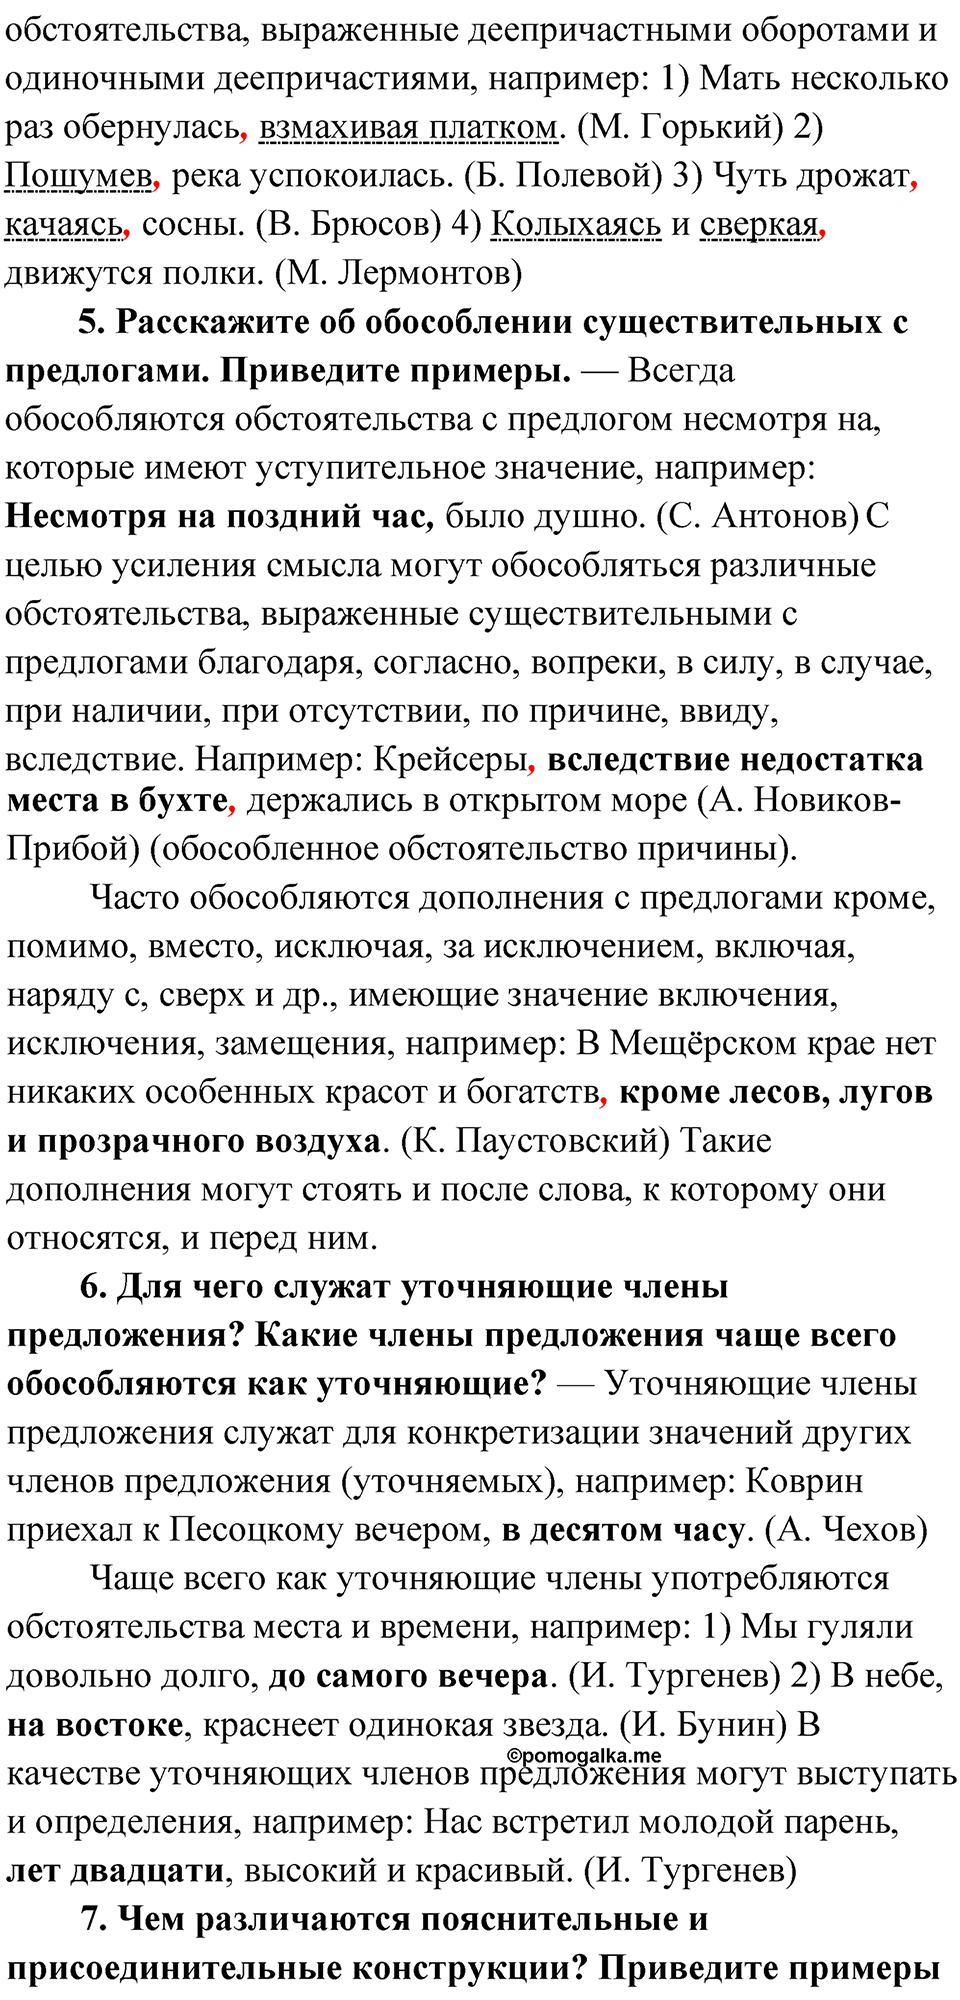 вопросы и задания для повторения, страница 230-231 русский язык 8 класс Бархударов 2023 год